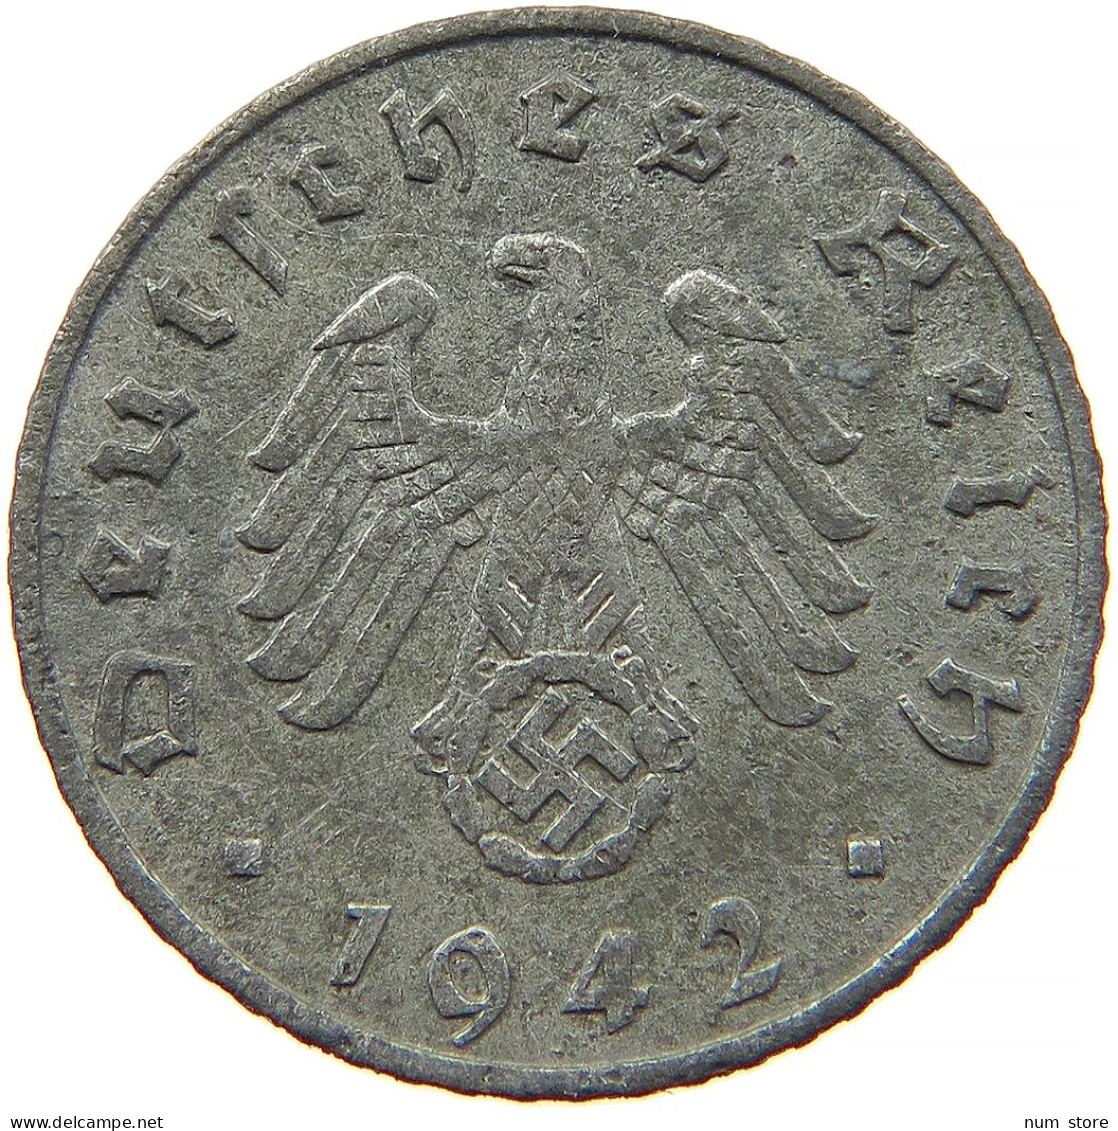 GERMANY 5 REICHSPFENNIG 1942 A #s091 0899 - 5 Reichspfennig